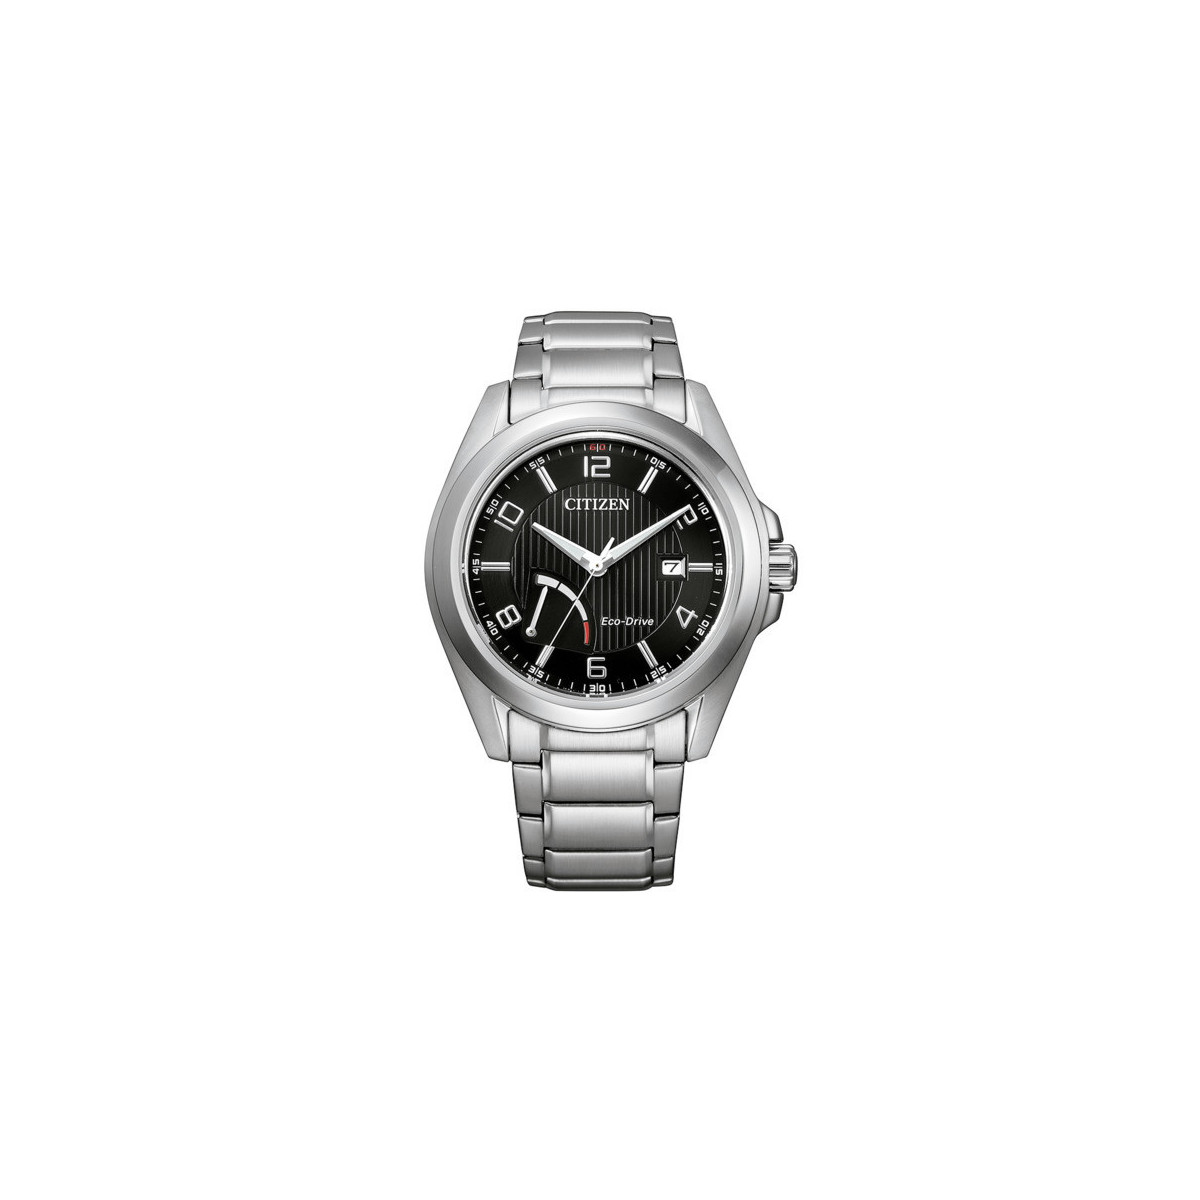 Reloj Citizen Eco-Drive J850 AW7050-84E